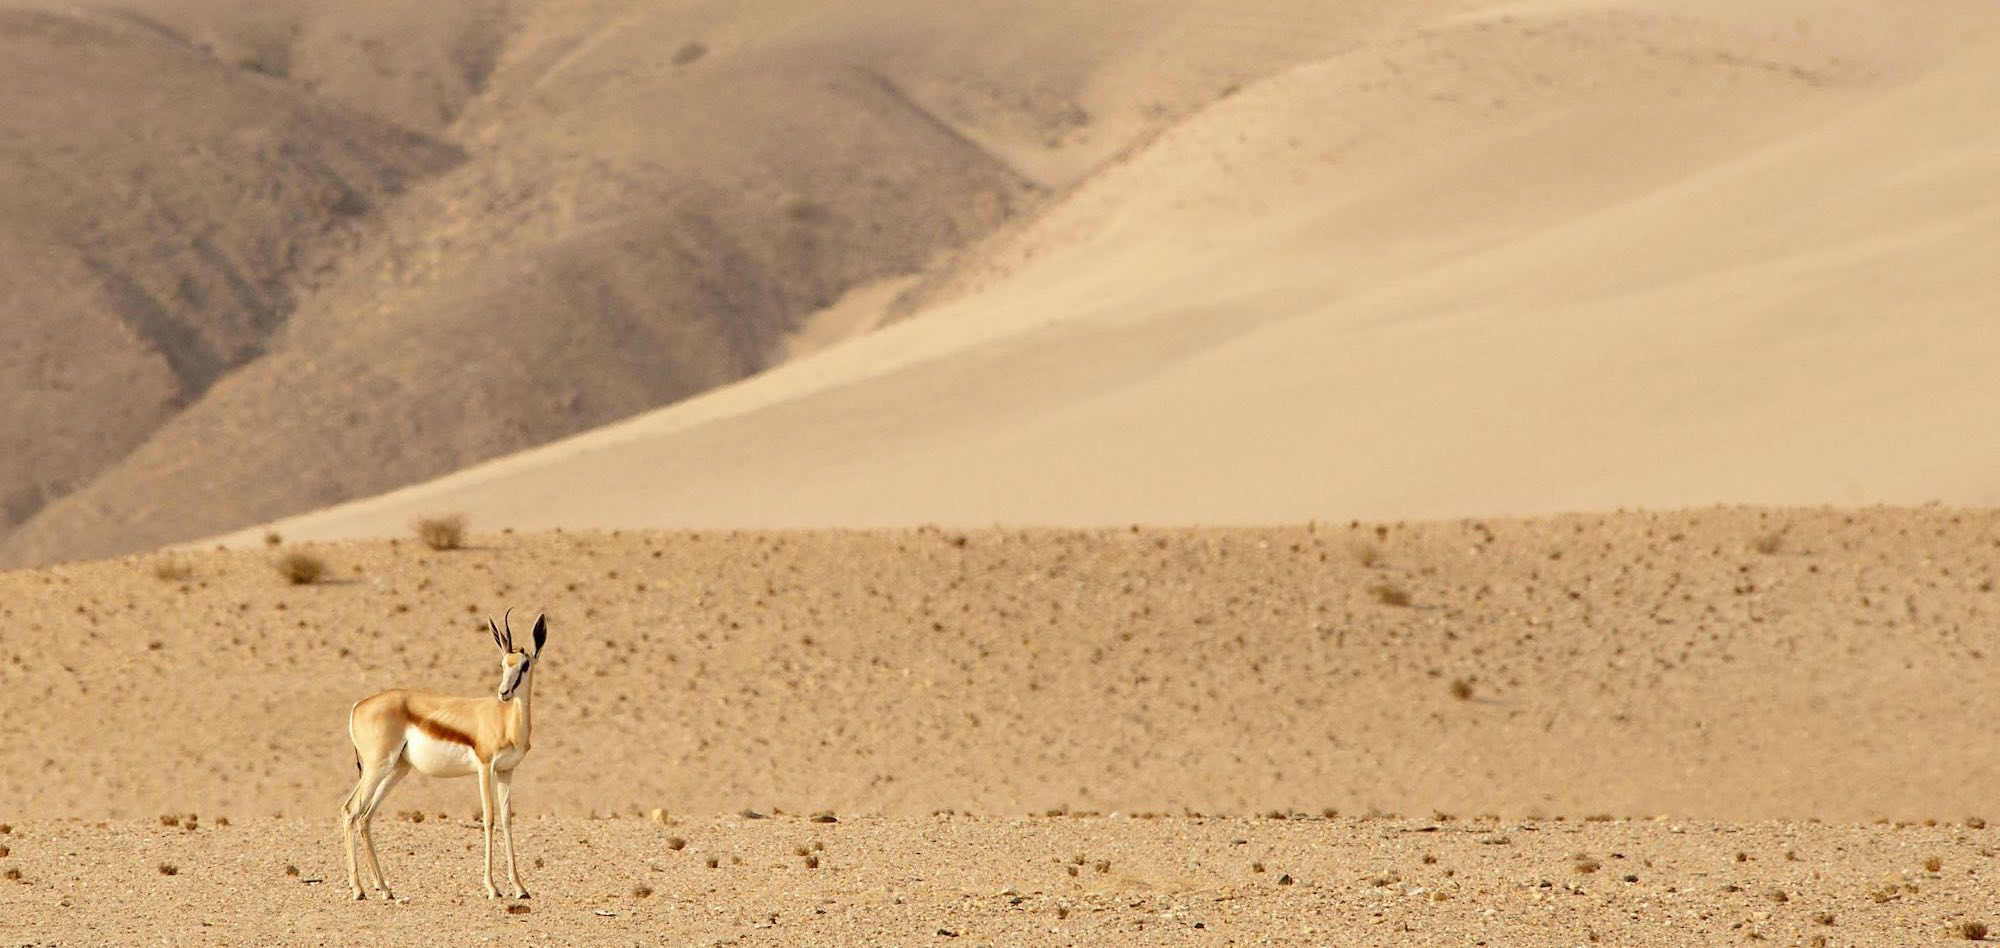 A lone springbok amongst the rolling Namibian desert.